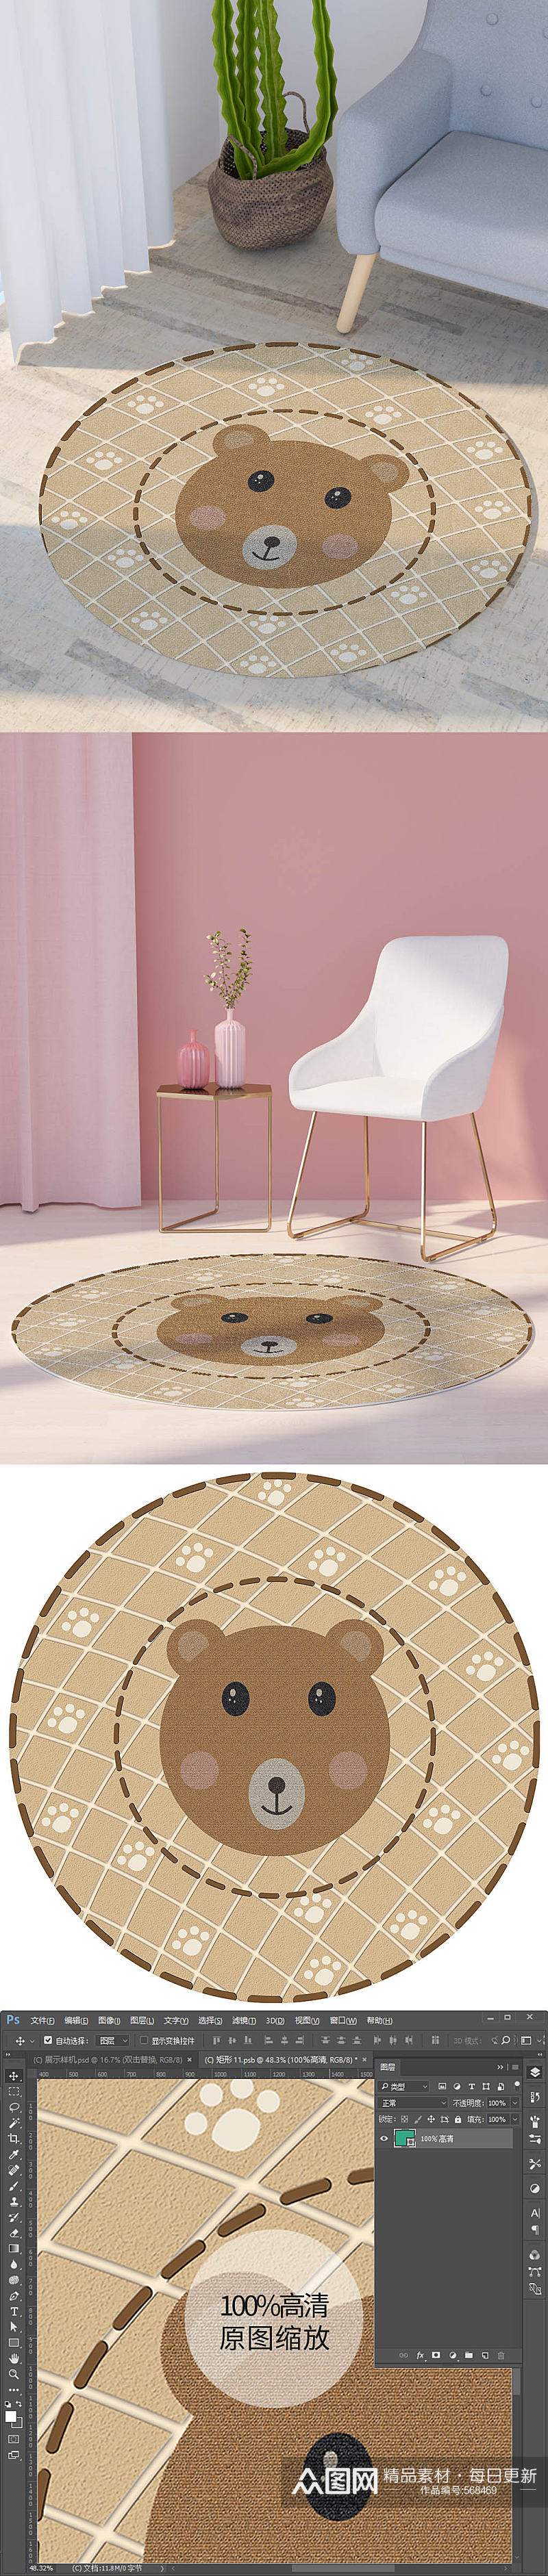 圆环小熊脚印图案圆形地毯垫子印花素材素材